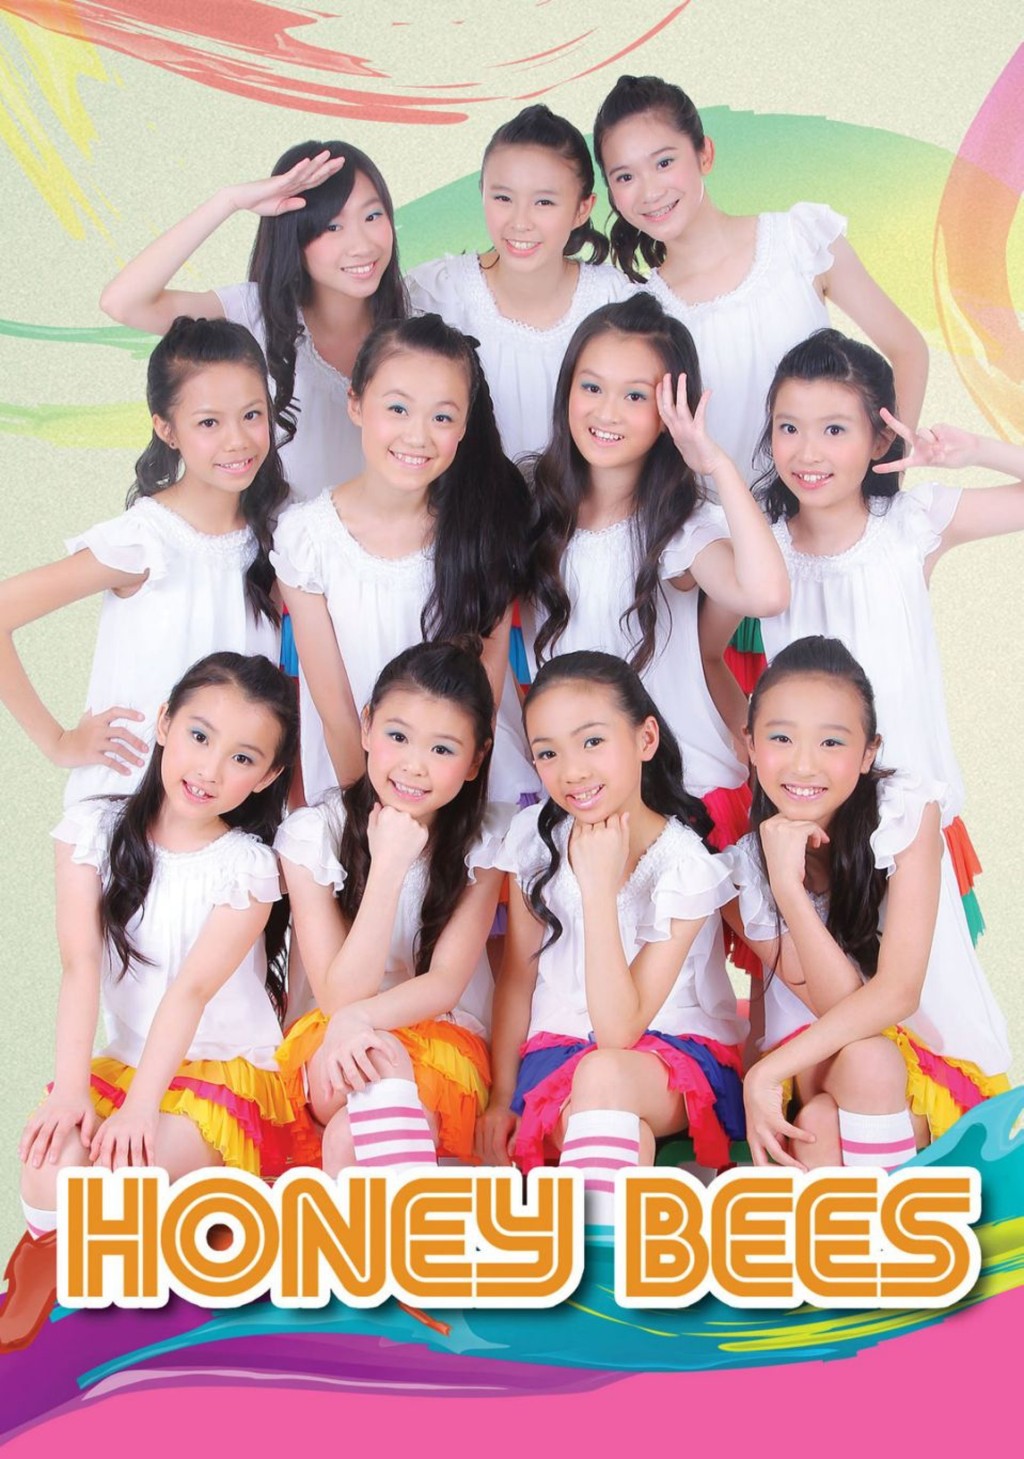 薛家燕2004年創辦家燕媽媽藝術中心，近廿年來發掘不少TVB童星，旗下於2011年成軍的女團Honey Bees更是出名盛產美女。